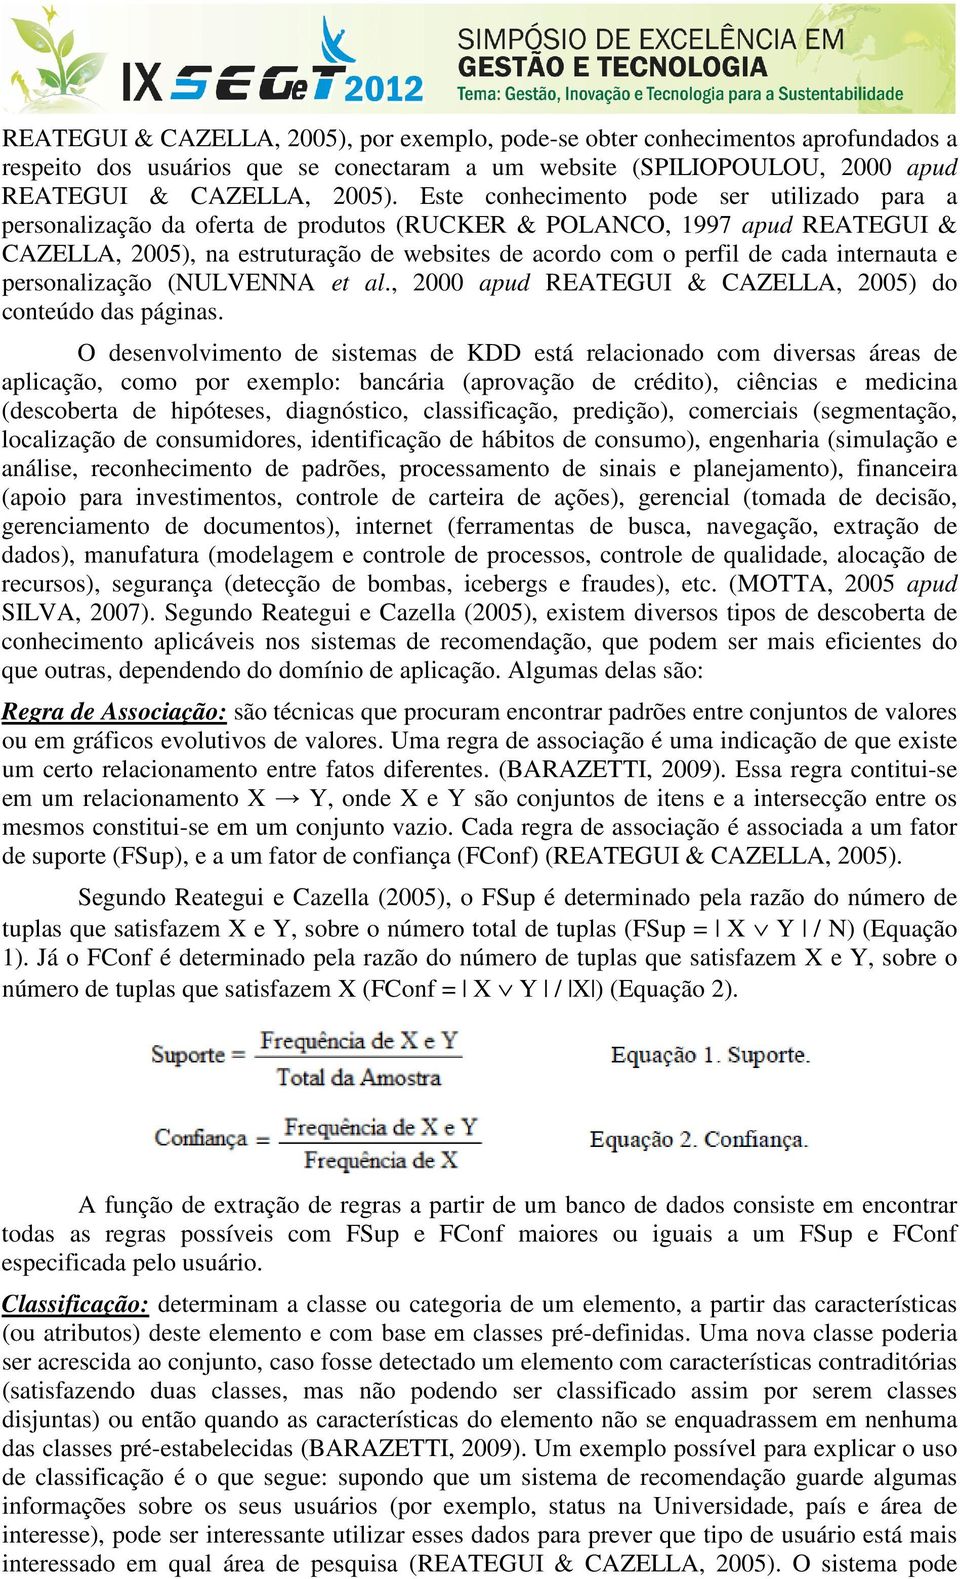 internauta e personalização (NULVENNA et al., 2000 apud REATEGUI & CAZELLA, 2005) do conteúdo das páginas.